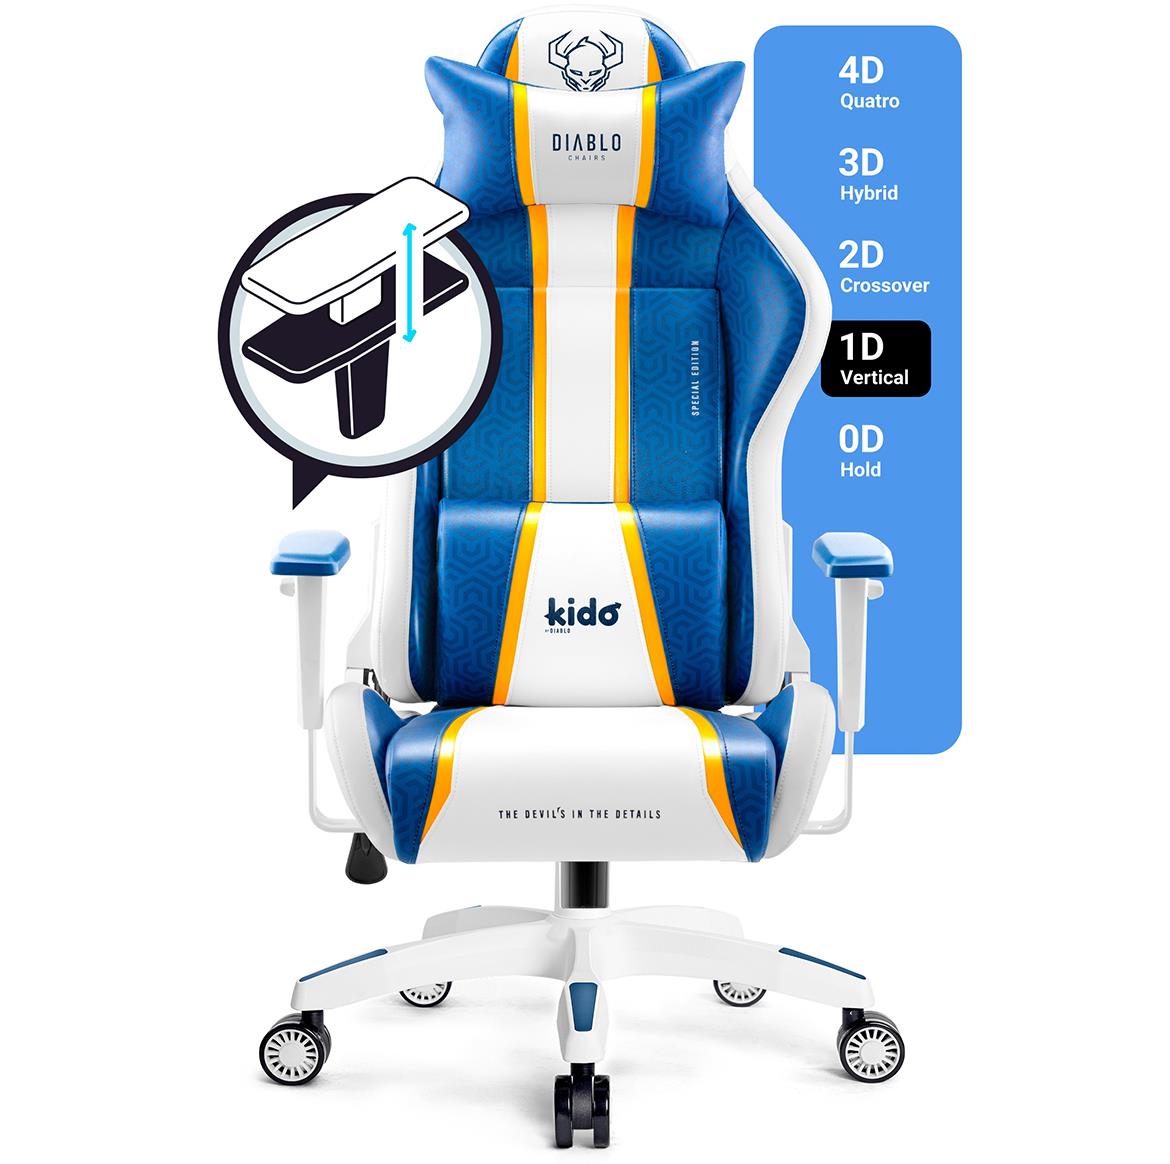 Diablo X-One 2.0 kancelarijska stolica 64x37x110 cm belo plava